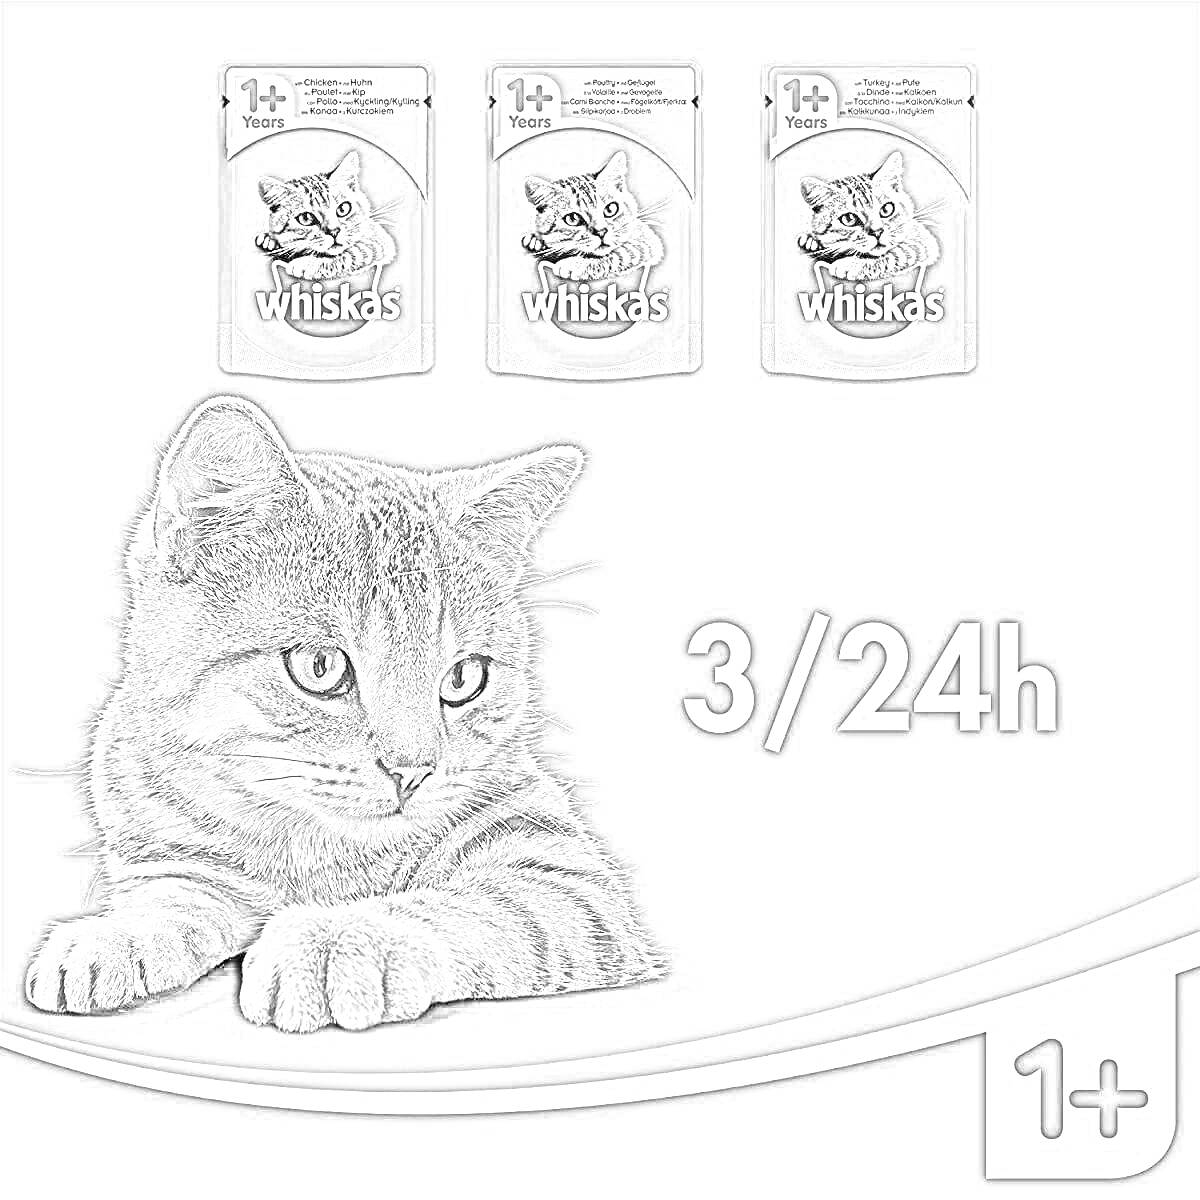 Корм для кошек Whiskas, три пакета, лежащий полосатый кот и текст 